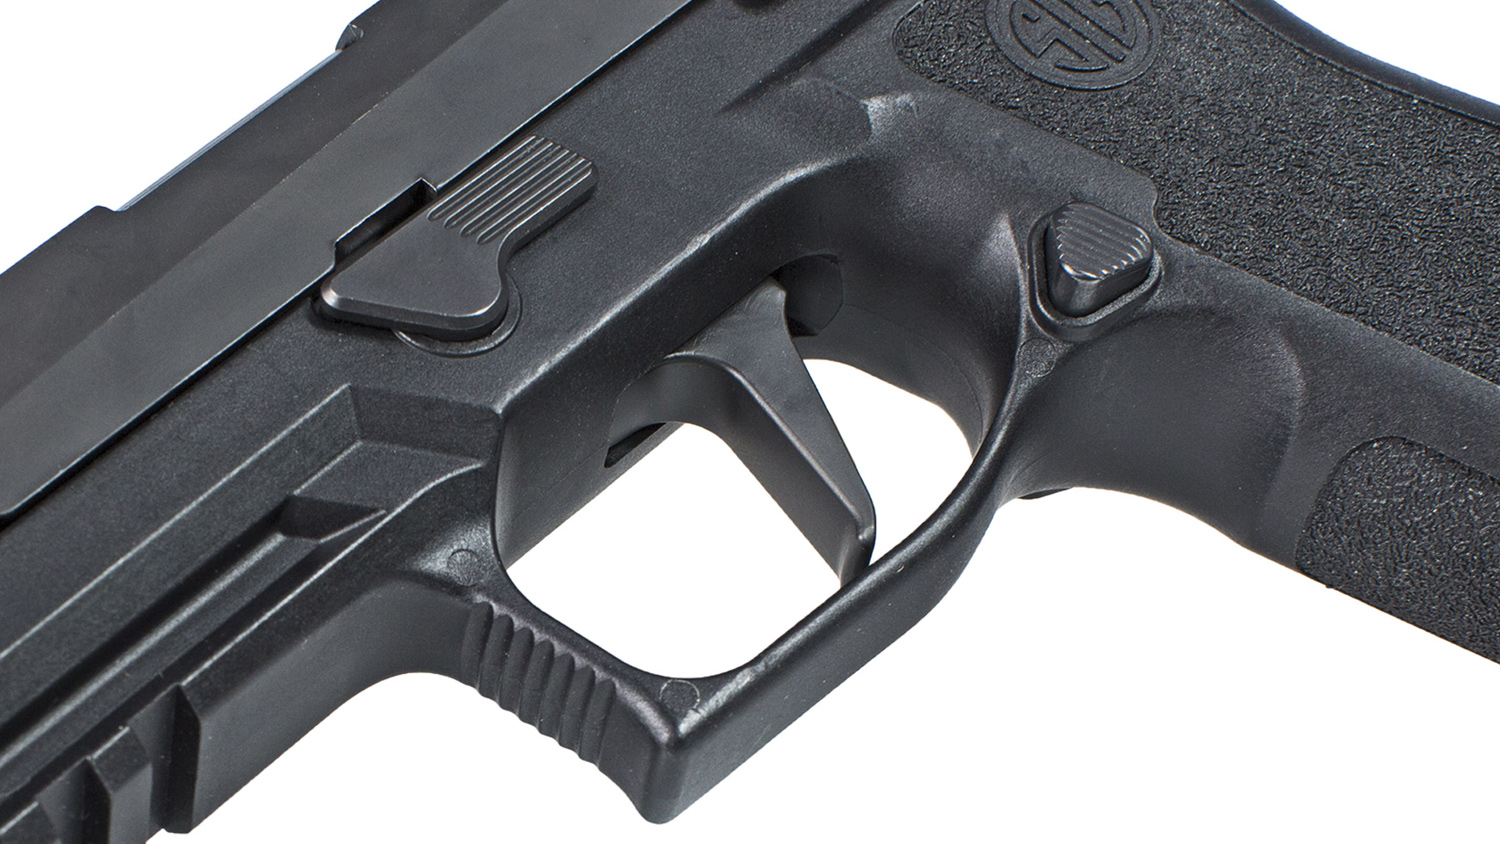 SIG P320 X5 trigger